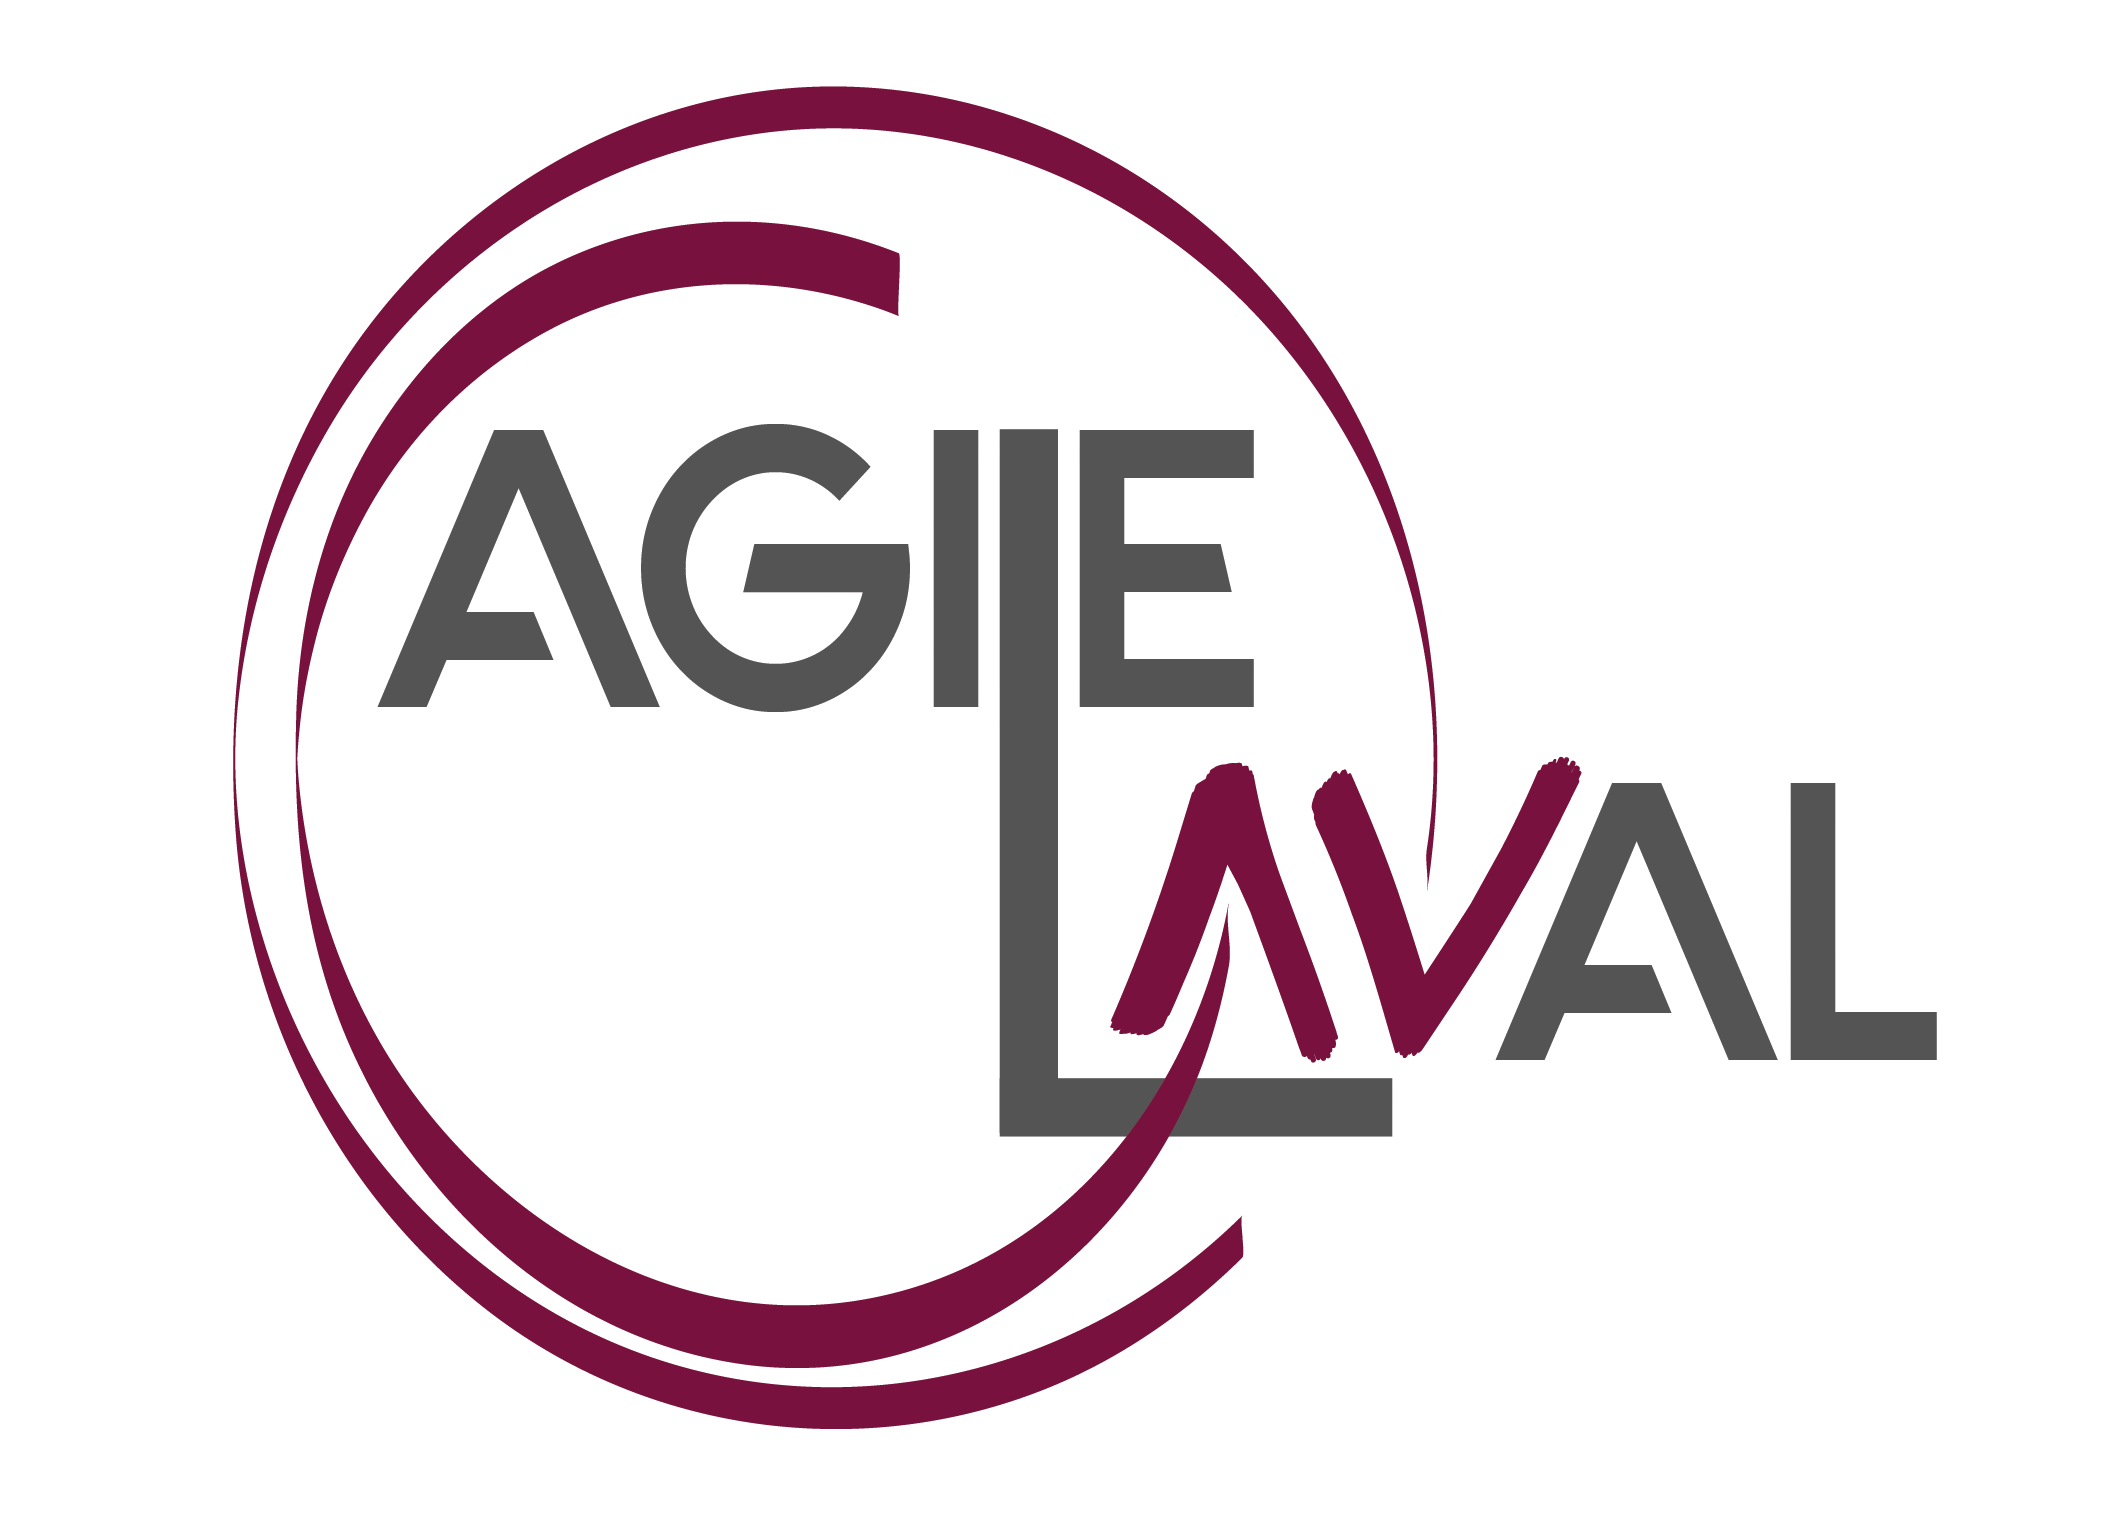 Agile Laval